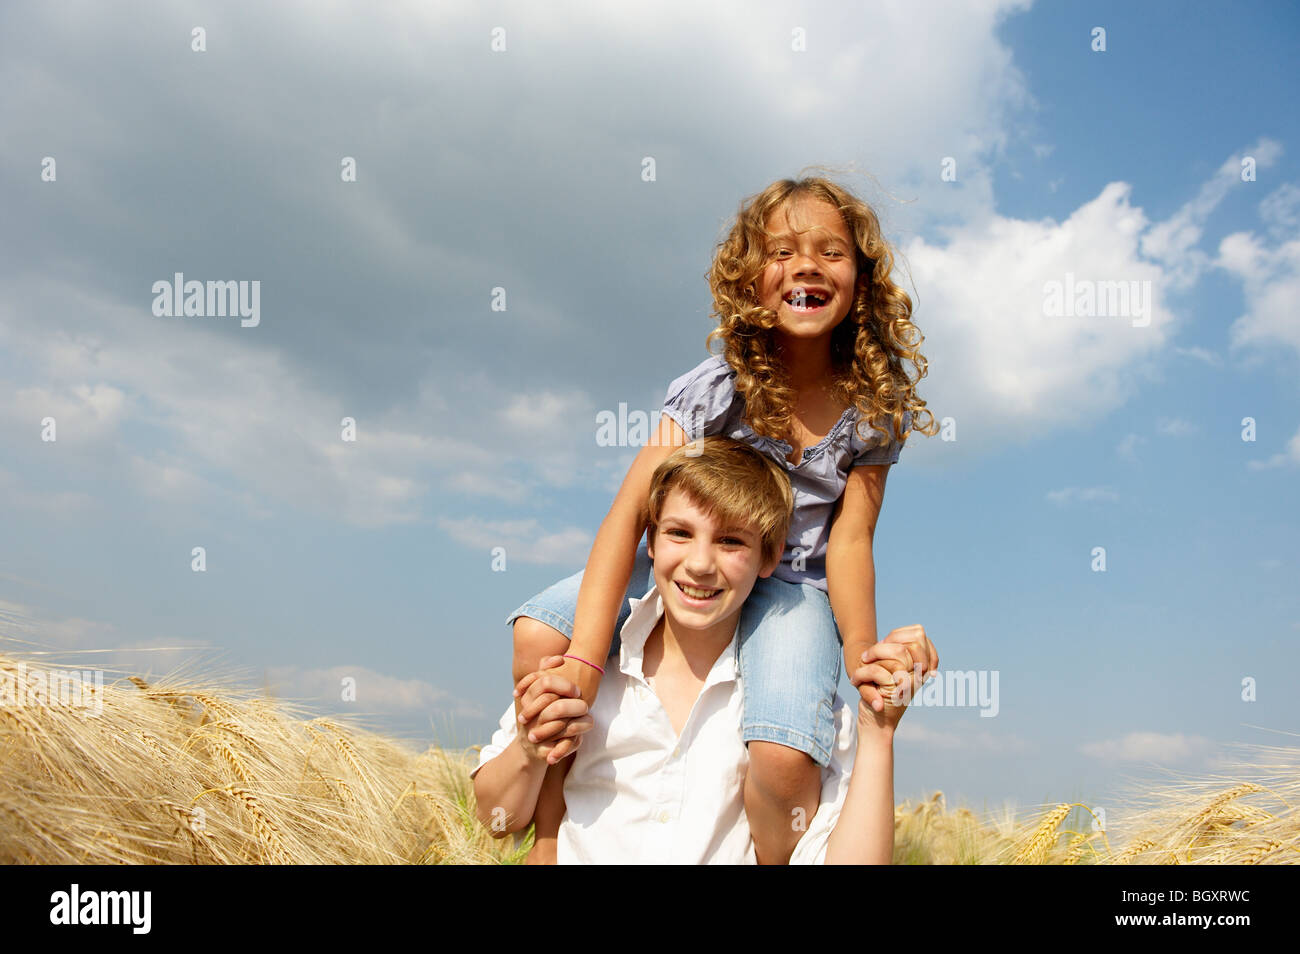 Bruder und Schwester in einem Weizenfeld Stockfoto